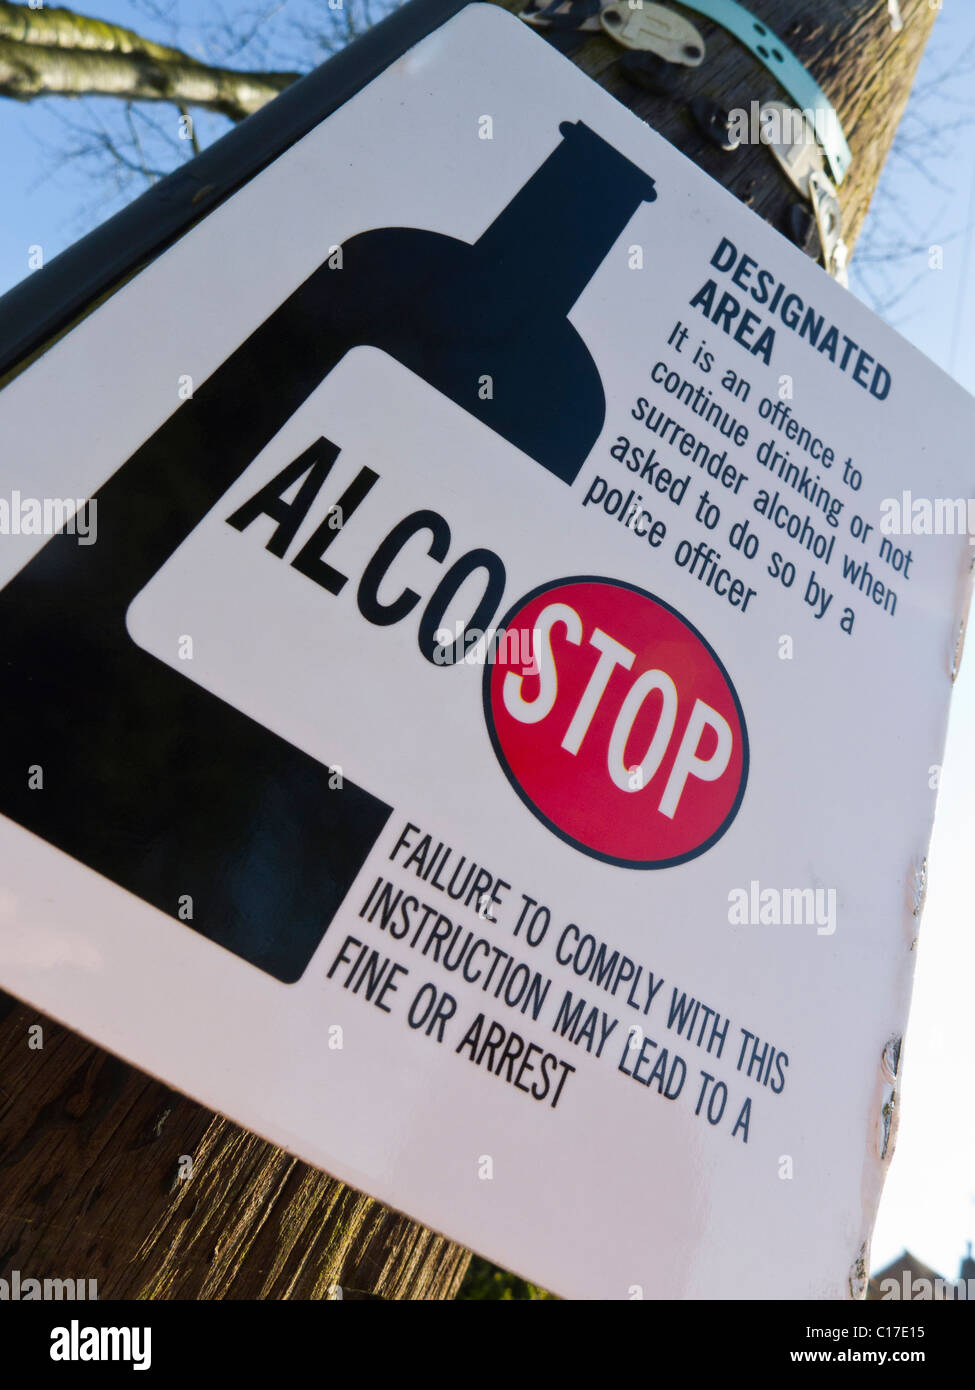 ALCO-STOP benannten Bereich Zeichen unterrichten die Öffentlichkeit nicht zu trinken von Alkohol in diesem Bereich. Stockfoto